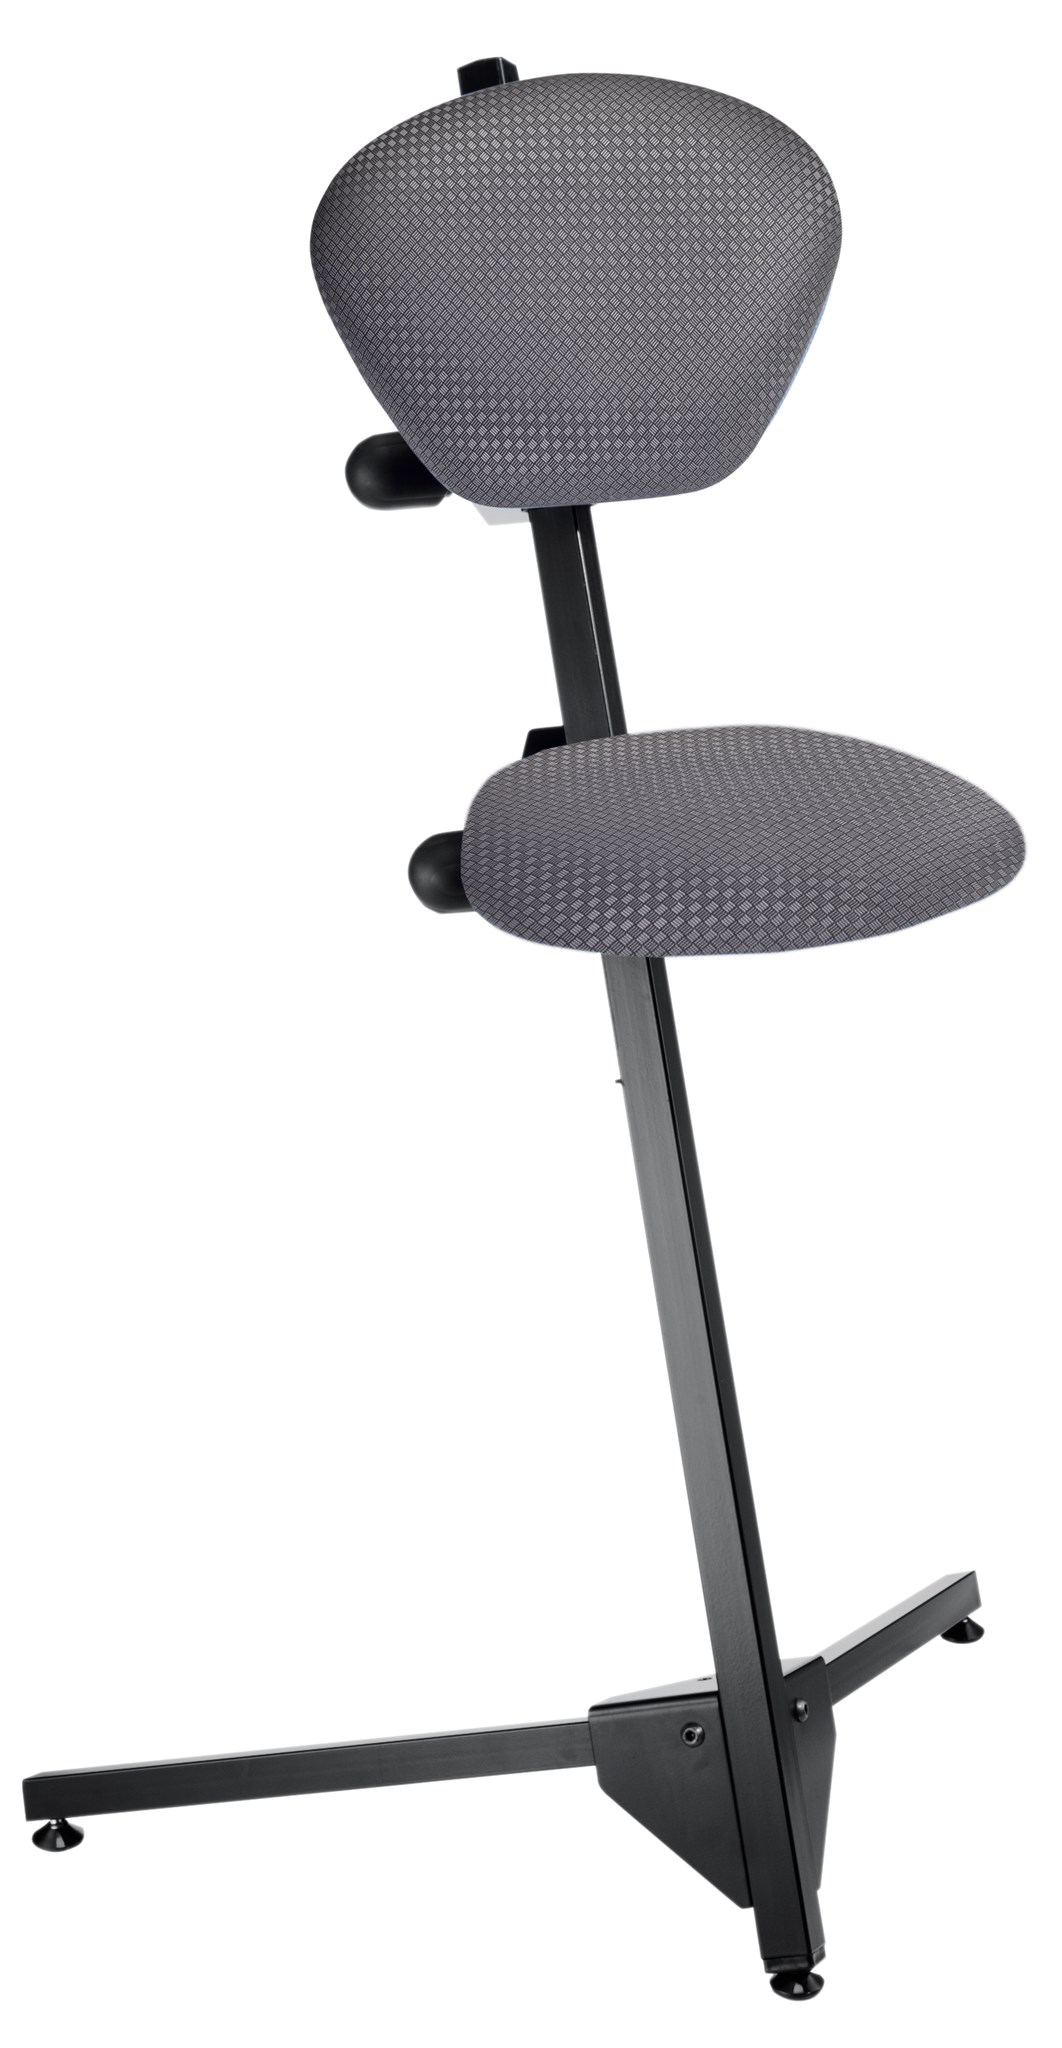 Bild von Stehhilfe mit Sitzfläche Bezug Techno, Sitz- und Rückenlehne einstellbar, Gestellfarbe RAL 9005 tiefschwarz